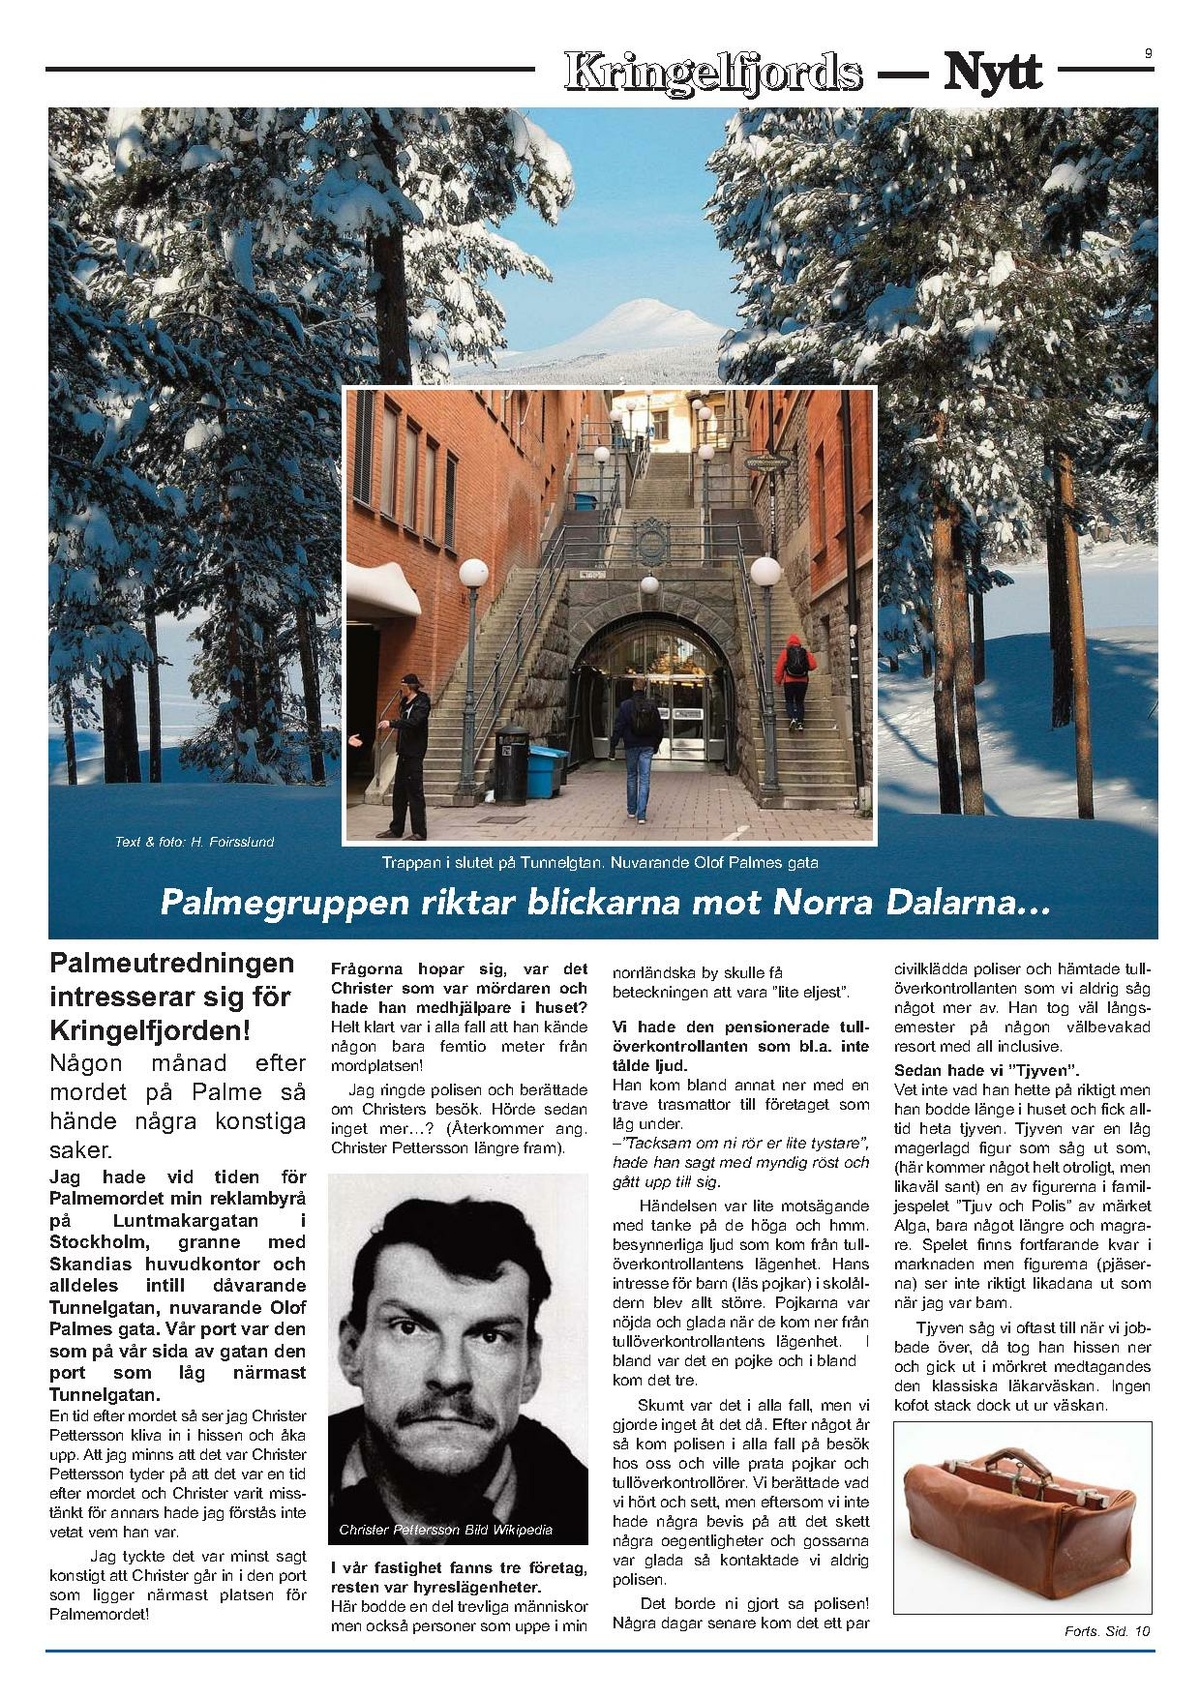 Nyh-2019-kringlefjords-nytt.SEs Idre semester.pdf